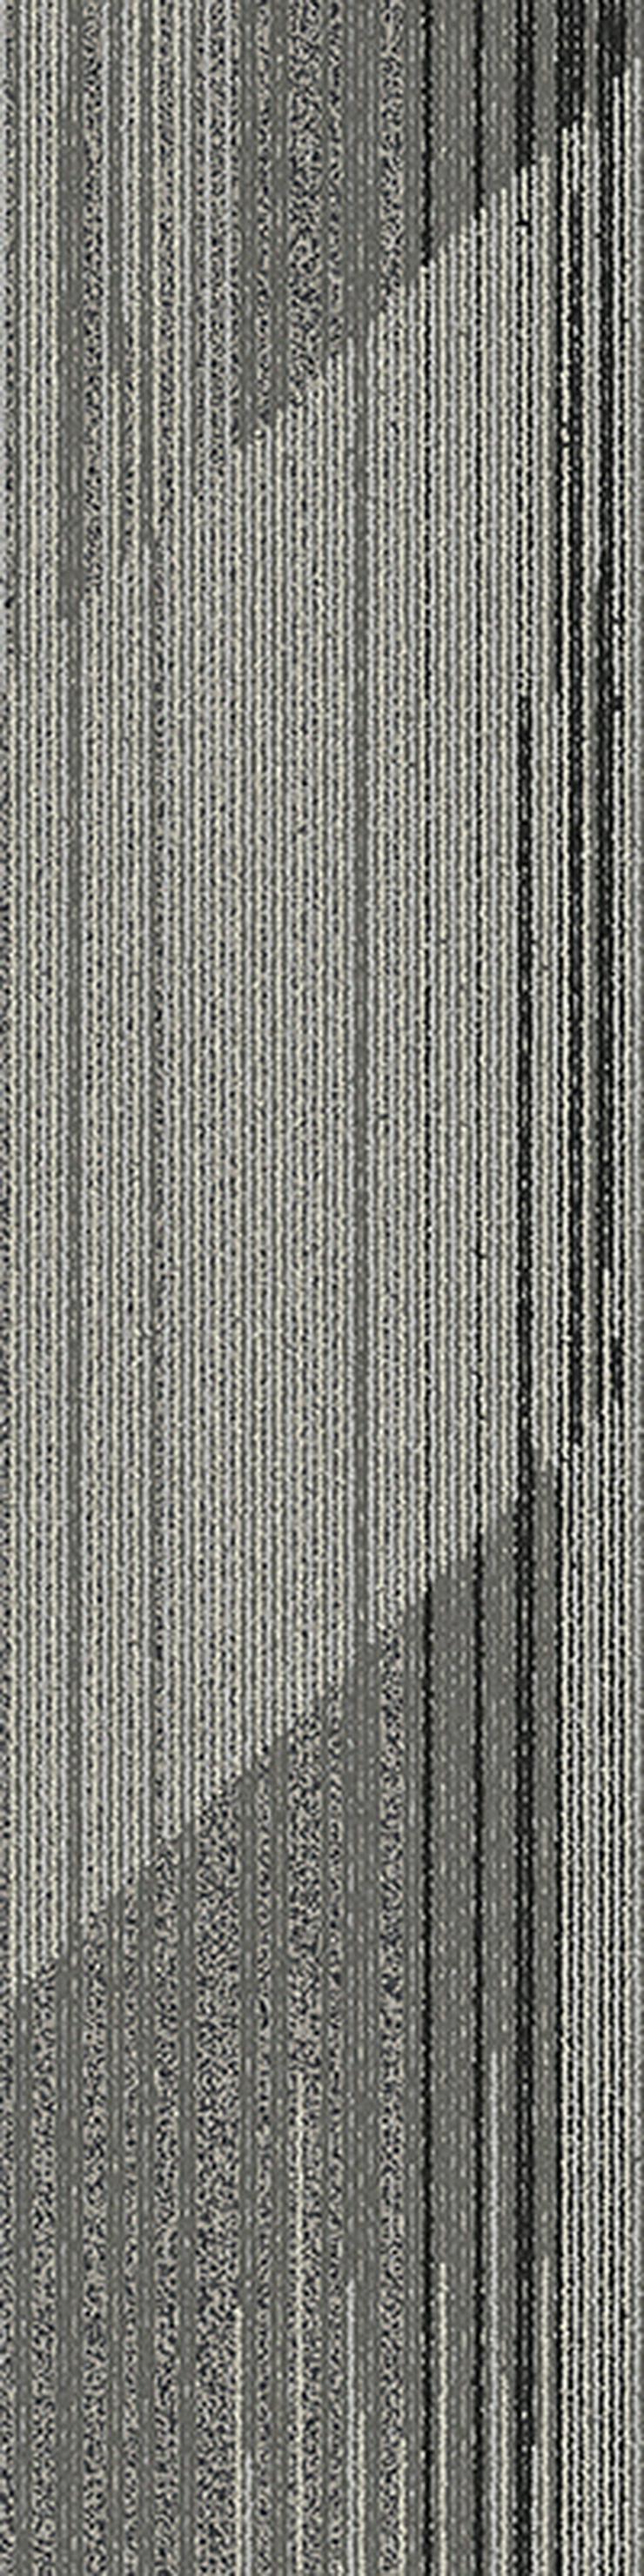 Gestreifte 'Laminat' Teppichfliesen. Bodenbelag in Grau und Braun - Teppiche - Bild 2